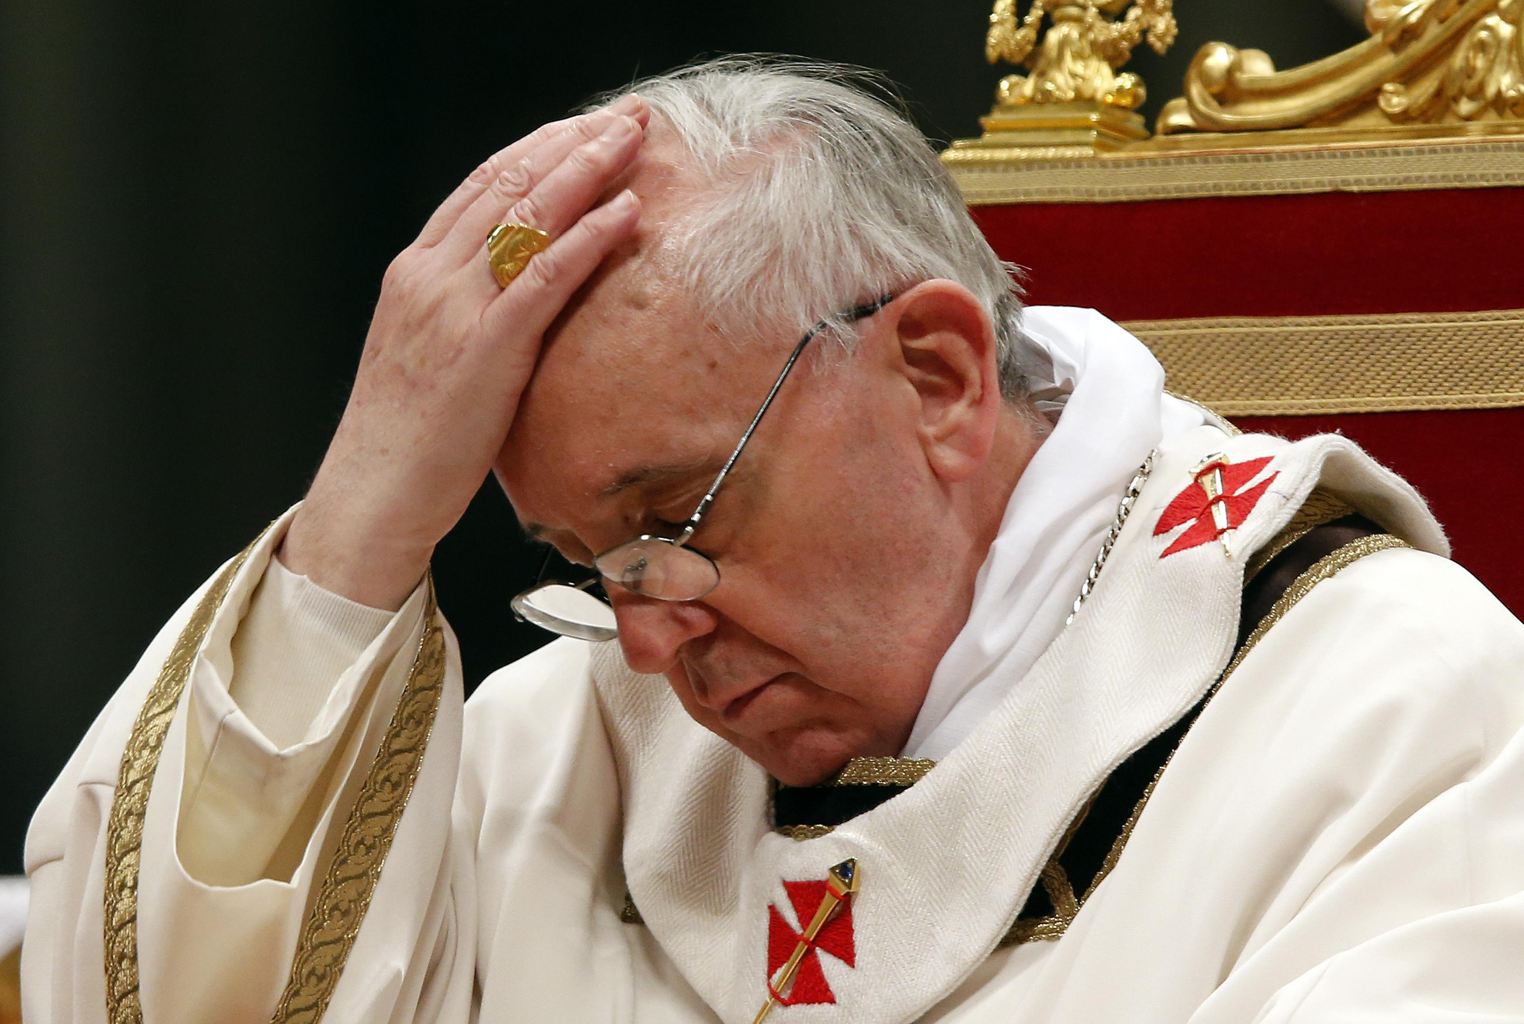 El Papa consternado por catástrofe de avión malasio